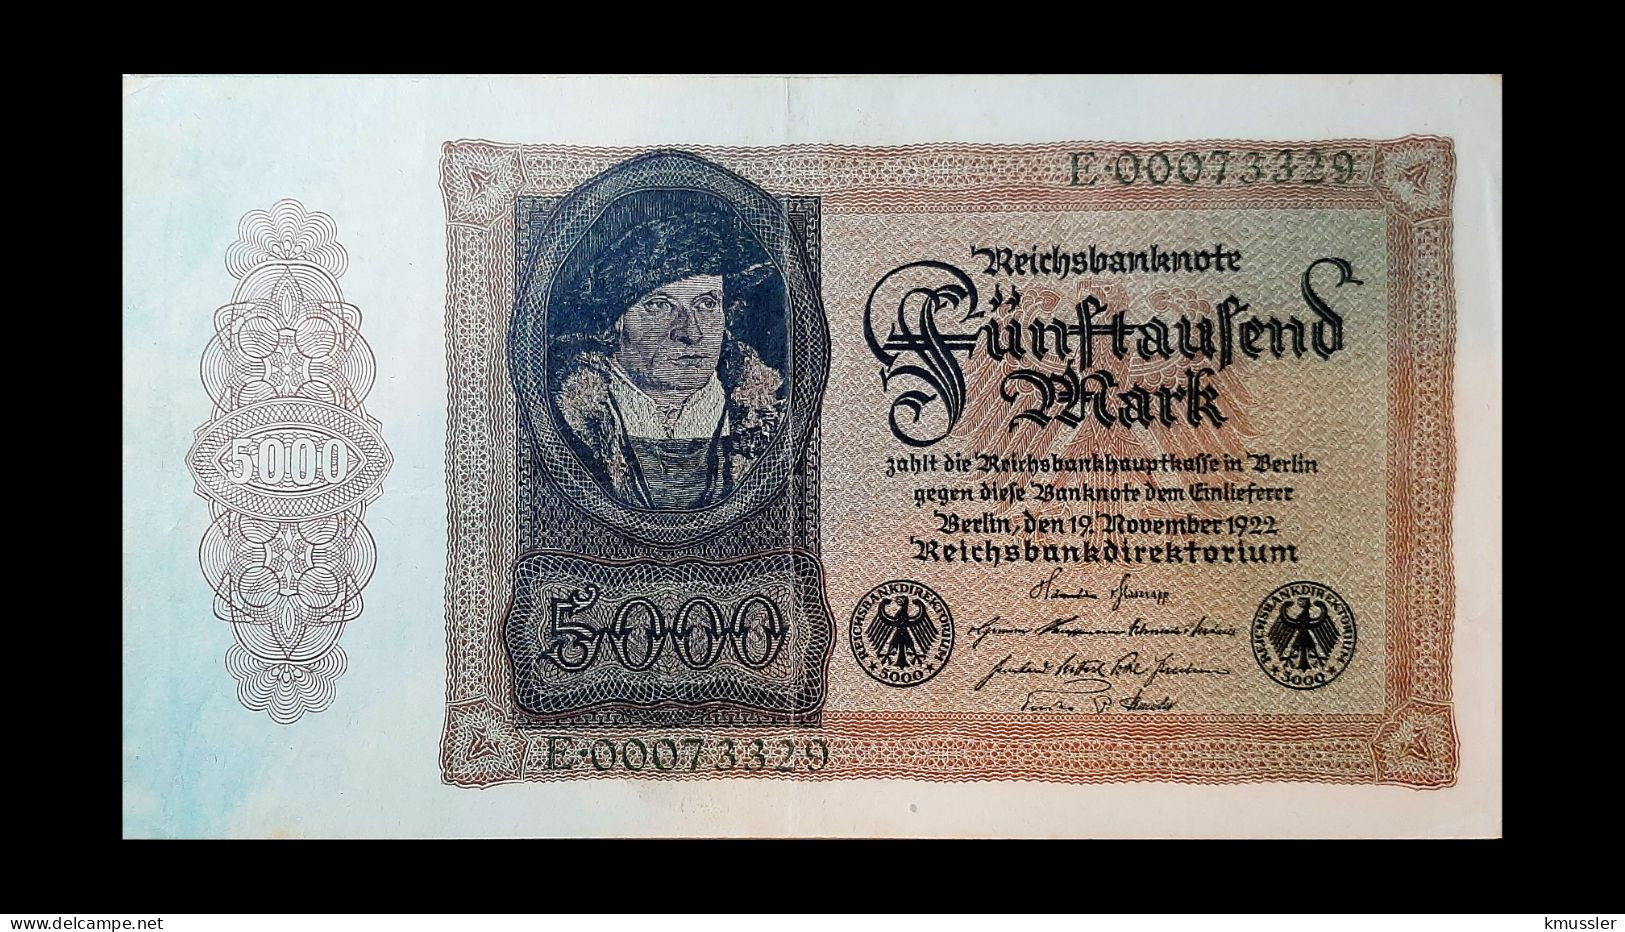 # # # Banknote Deutsches Reich (Germany) 5.000 Mark 1922 # # # - 5.000 Mark